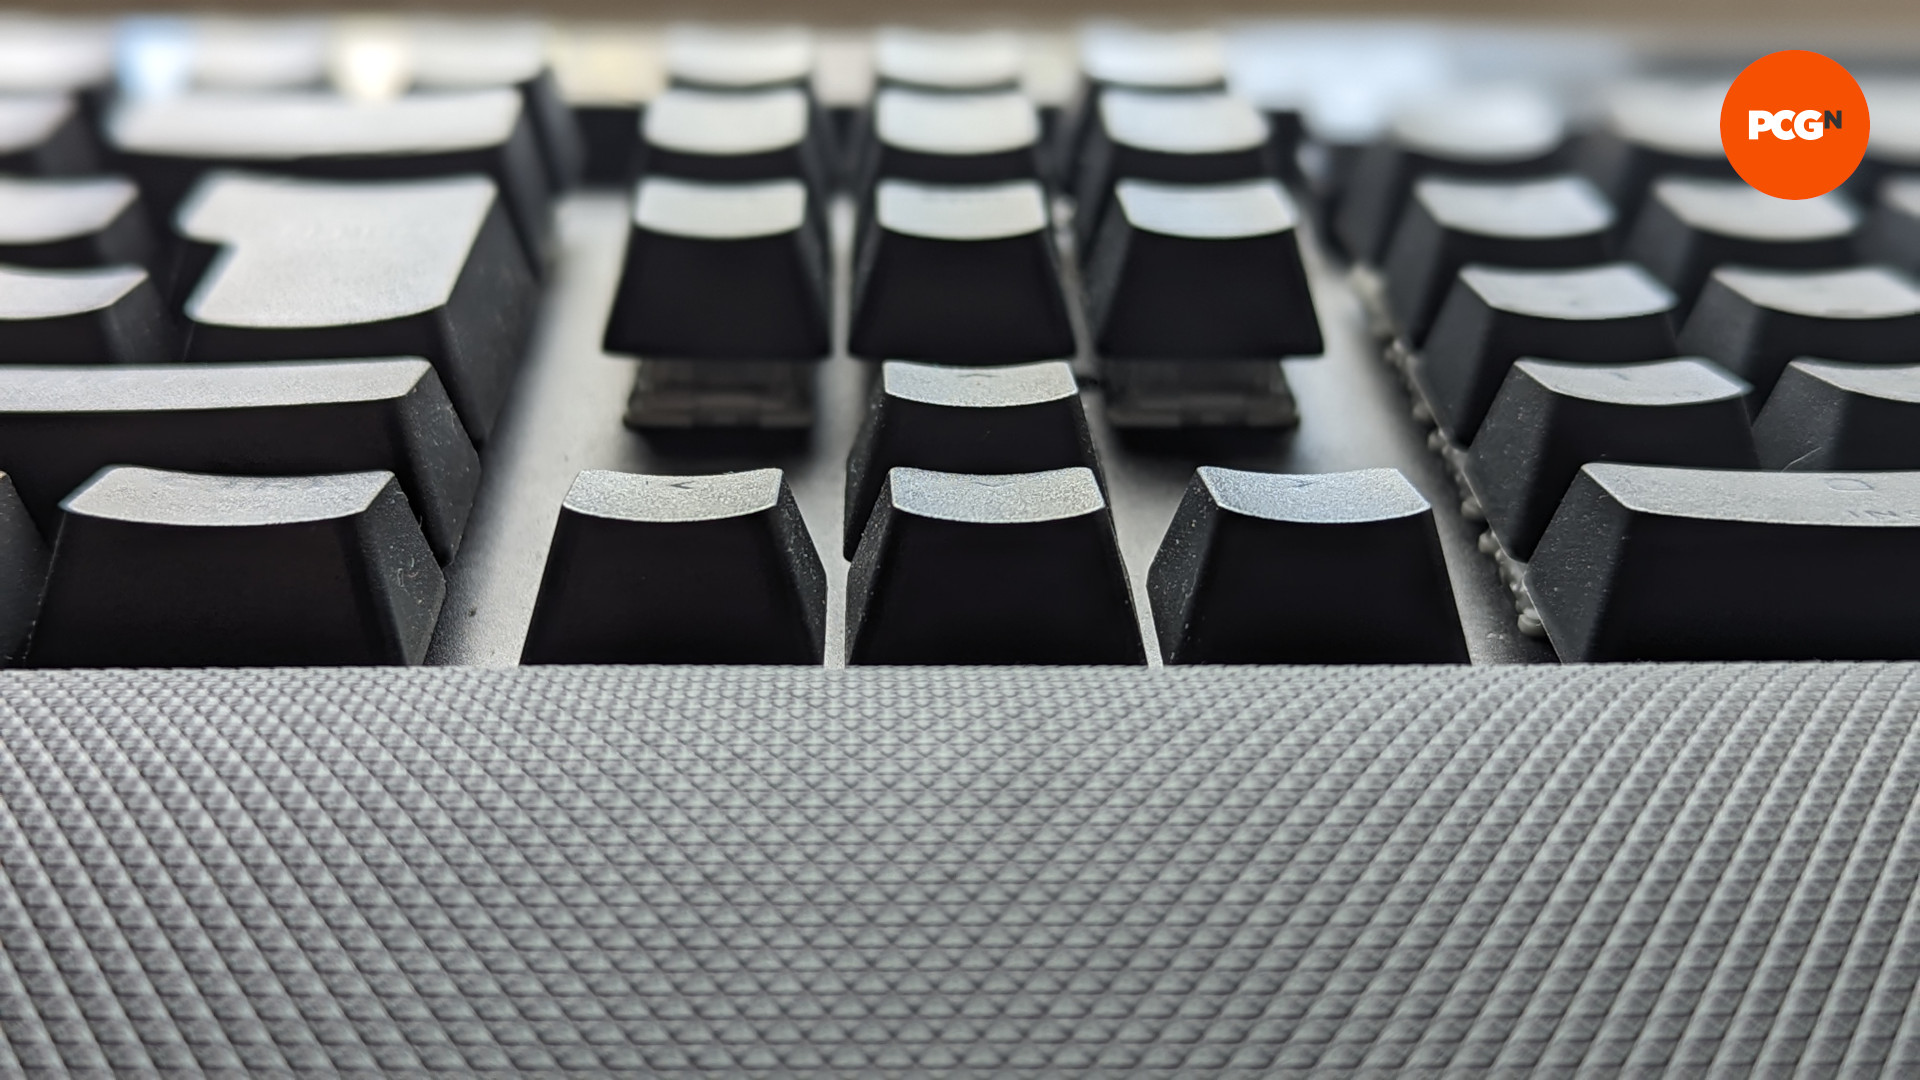 Une vue du clavier de jeu Corsair K70 Max du point de vue de son repose-poignet, montrant la taille des touches